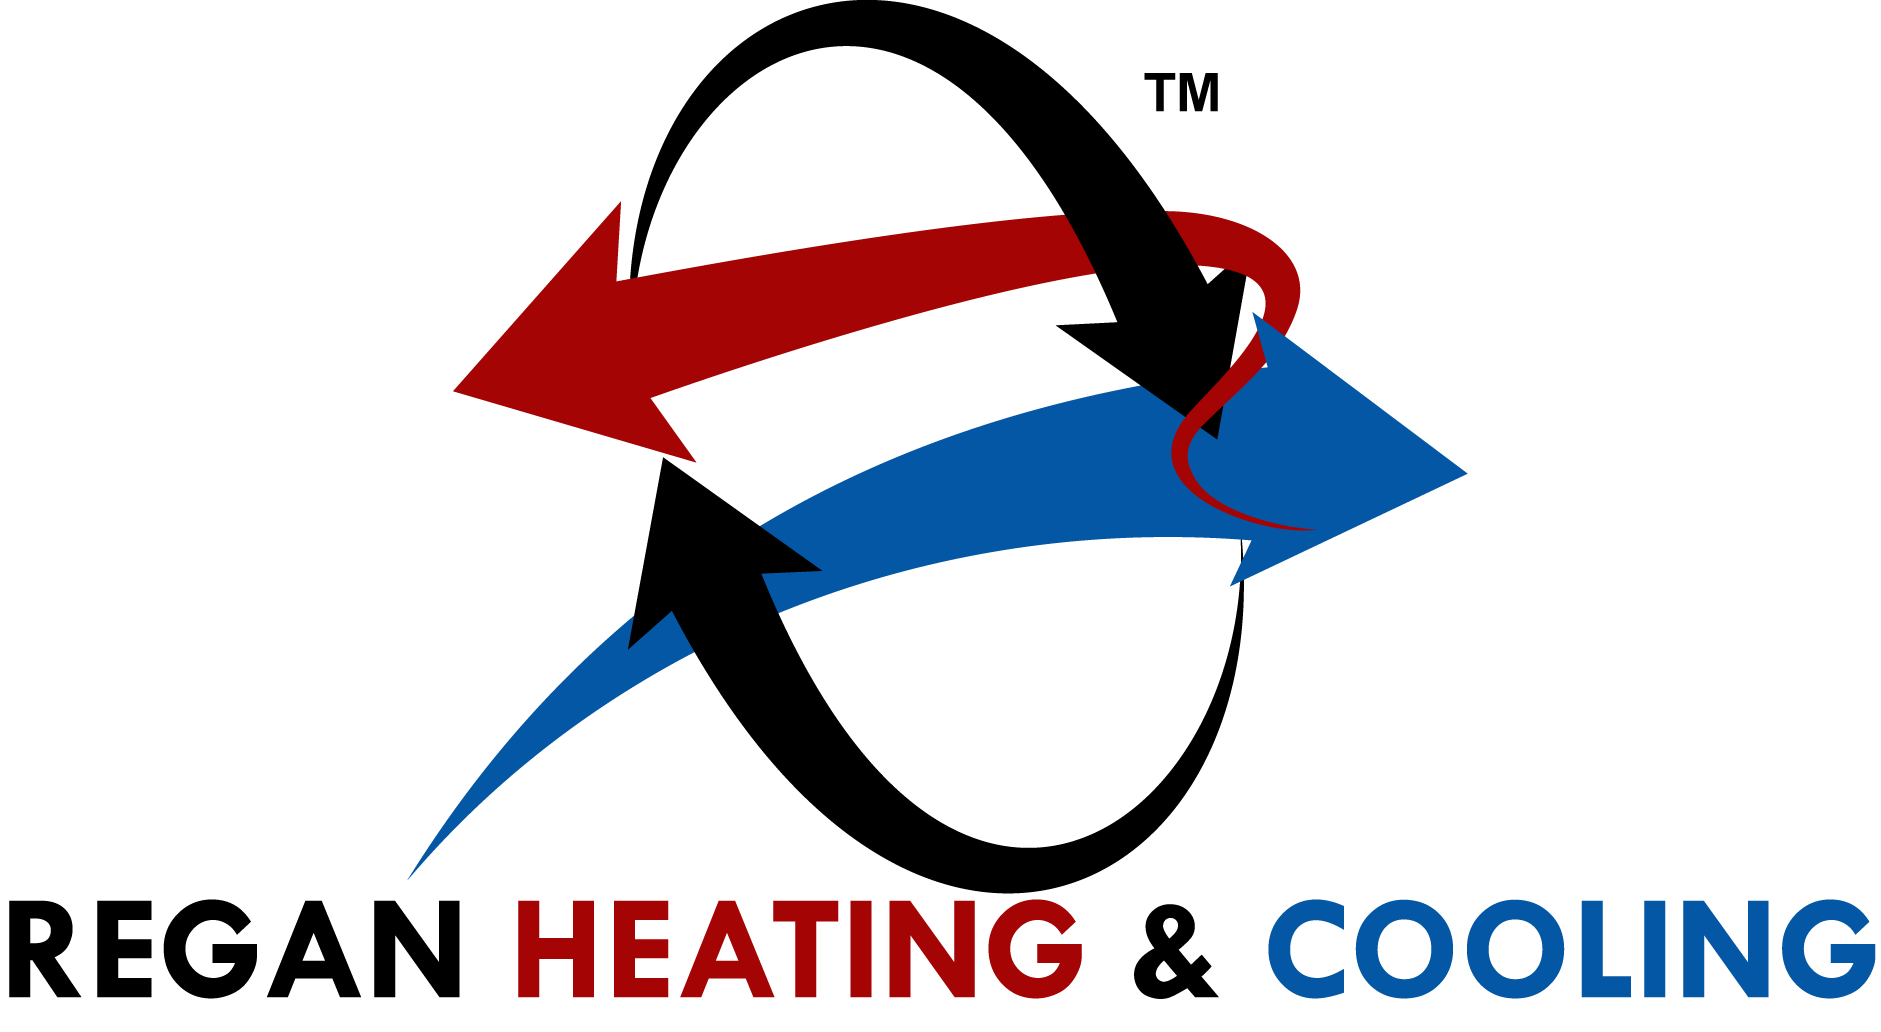 Regan Heating & Cooling